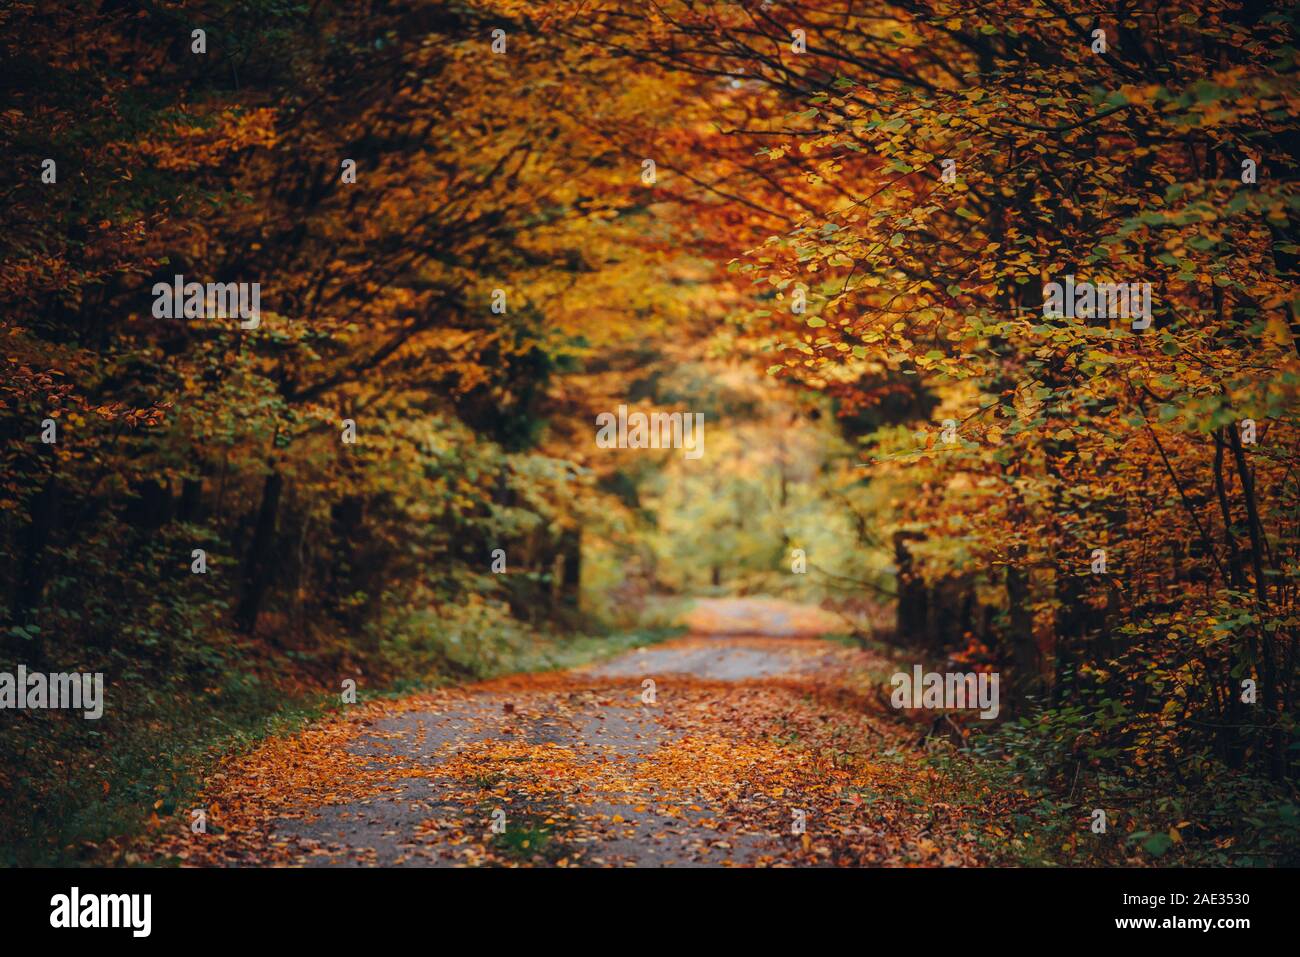 Forêt d'automne, Orange Road dans la belle nature, paysages colorés, fond d'orange d'origine Banque D'Images